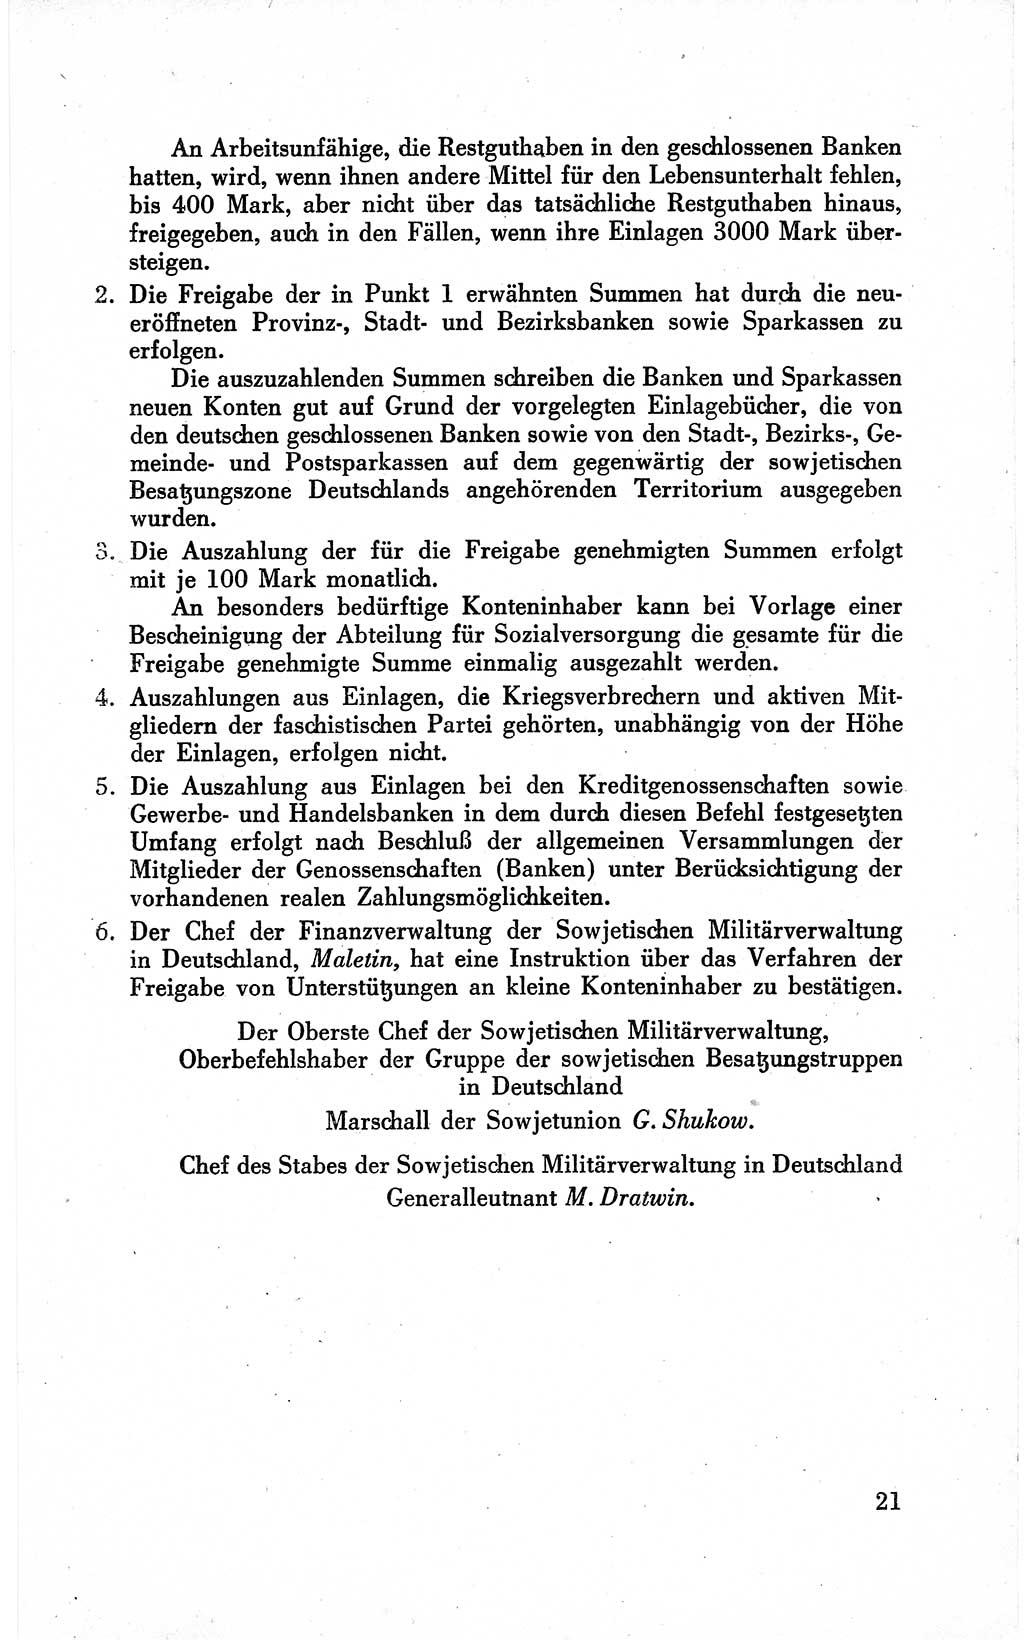 Befehle des Obersten Chefs der Sowjetischen MiltÃ¤rverwaltung (SMV) in Deutschland - Aus dem Stab der Sowjetischen MilitÃ¤rverwaltung in Deutschland 1946 (Bef. SMV Dtl. 1946, S. 21)